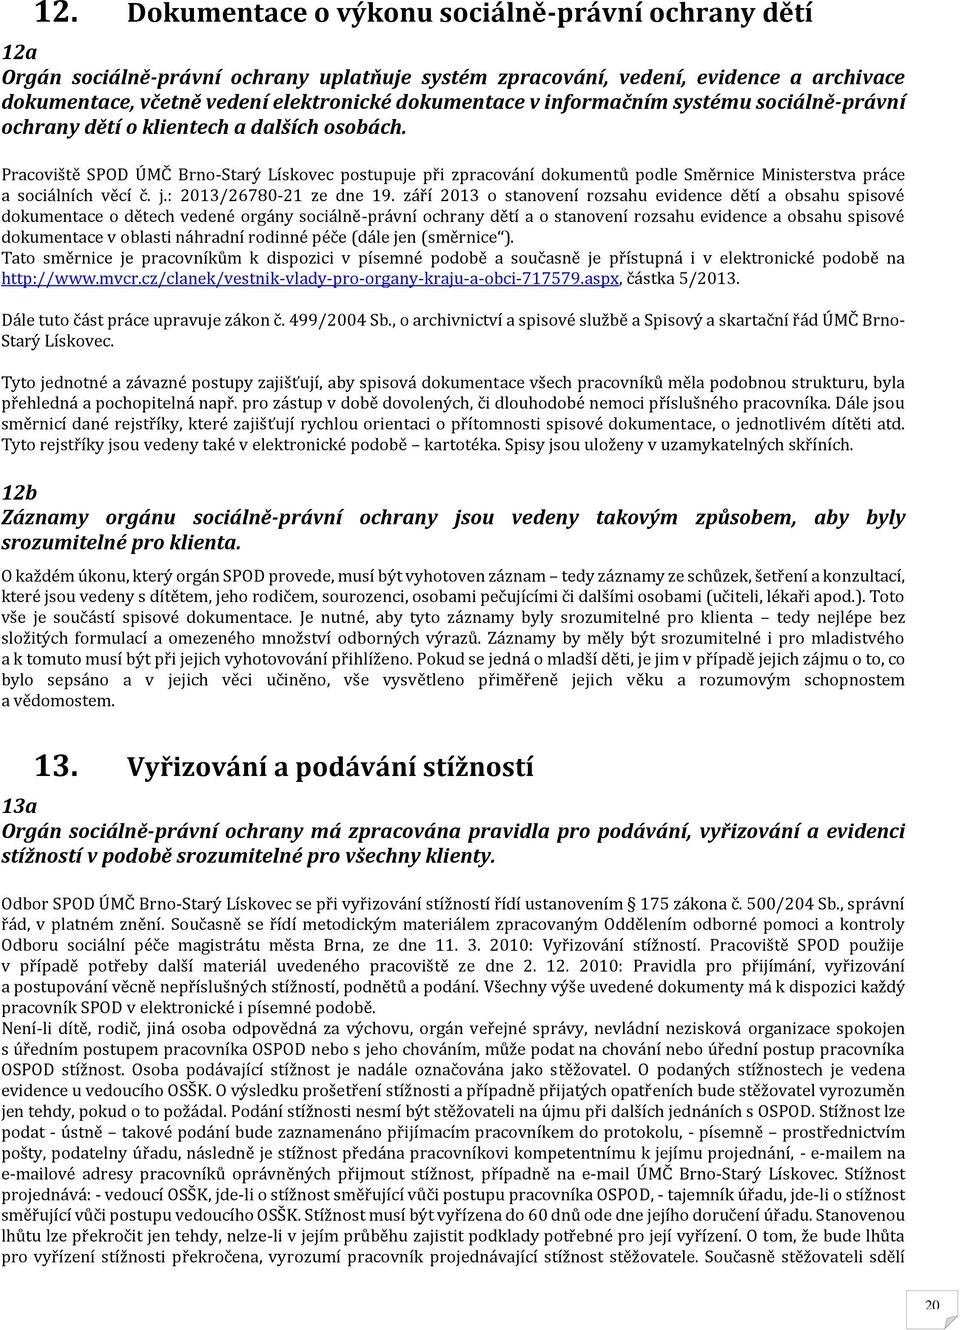 Pracoviště SPOD ÚMČ Brno-Starý Lískovec postupuje při zpracování dokumentů podle Směrnice Ministerstva práce a sociálních věcí č. j.: 2013/26780-21 ze dne 19.